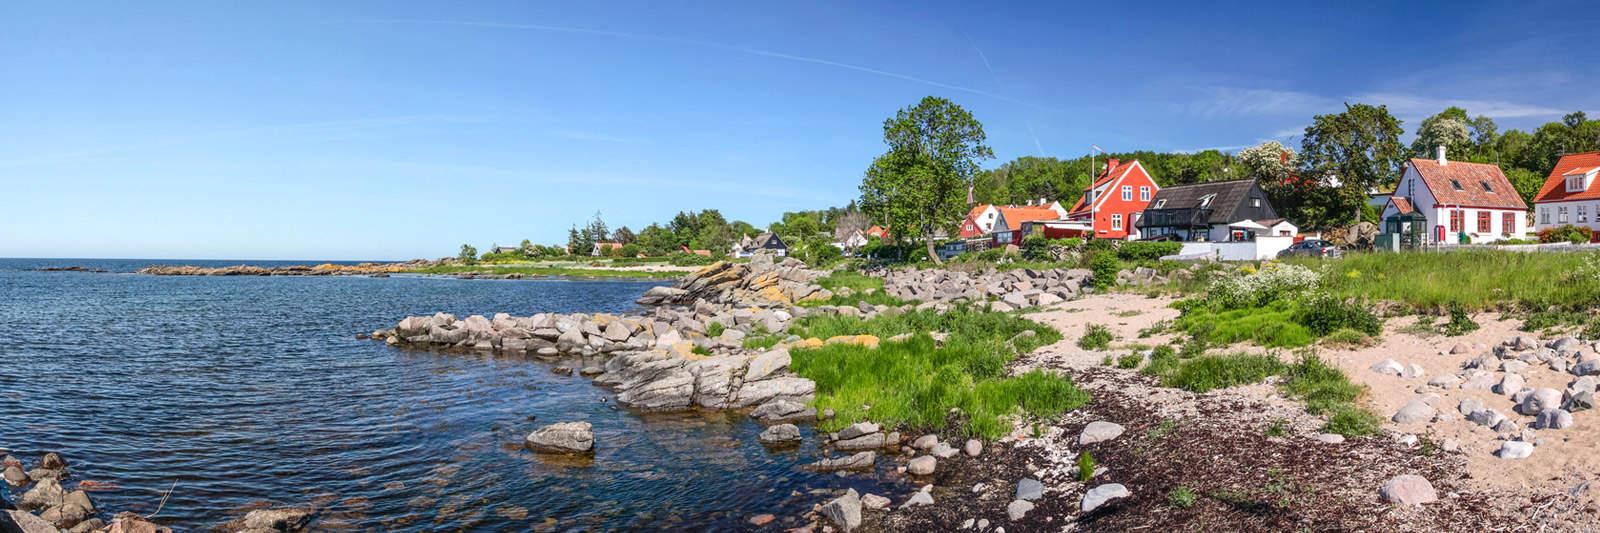 21 Ferienwohnungen und Ferienhäuser in Kjul Strand - tourist-online.de